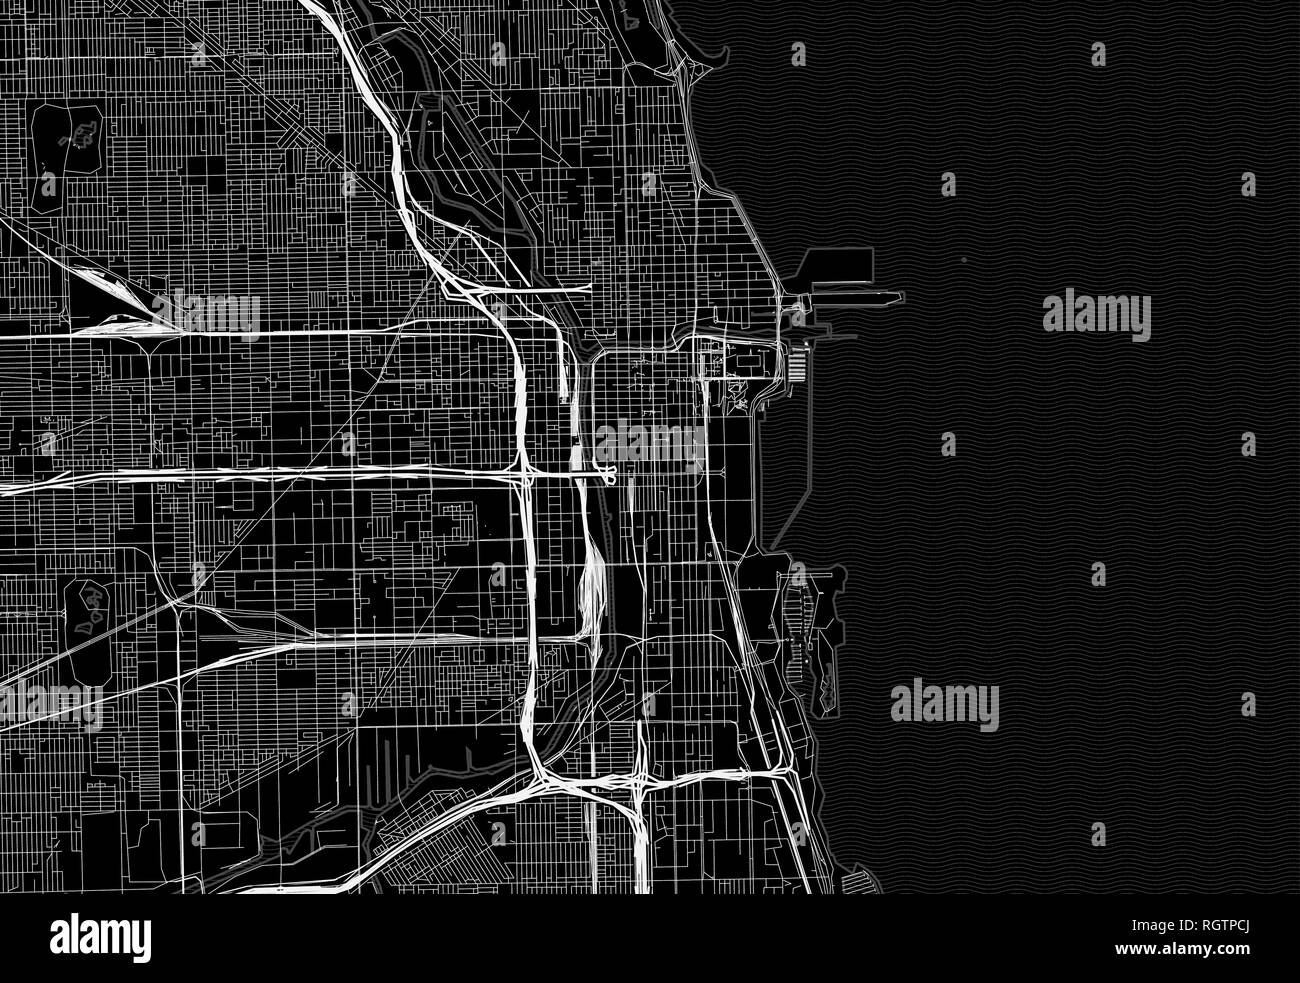 Schwarze Karte von Downtown Chicago, USA Dieser Vektor artmap ist als dekorativer Hintergrund oder eine einmalige Reise Zeichen erstellt. Stock Vektor